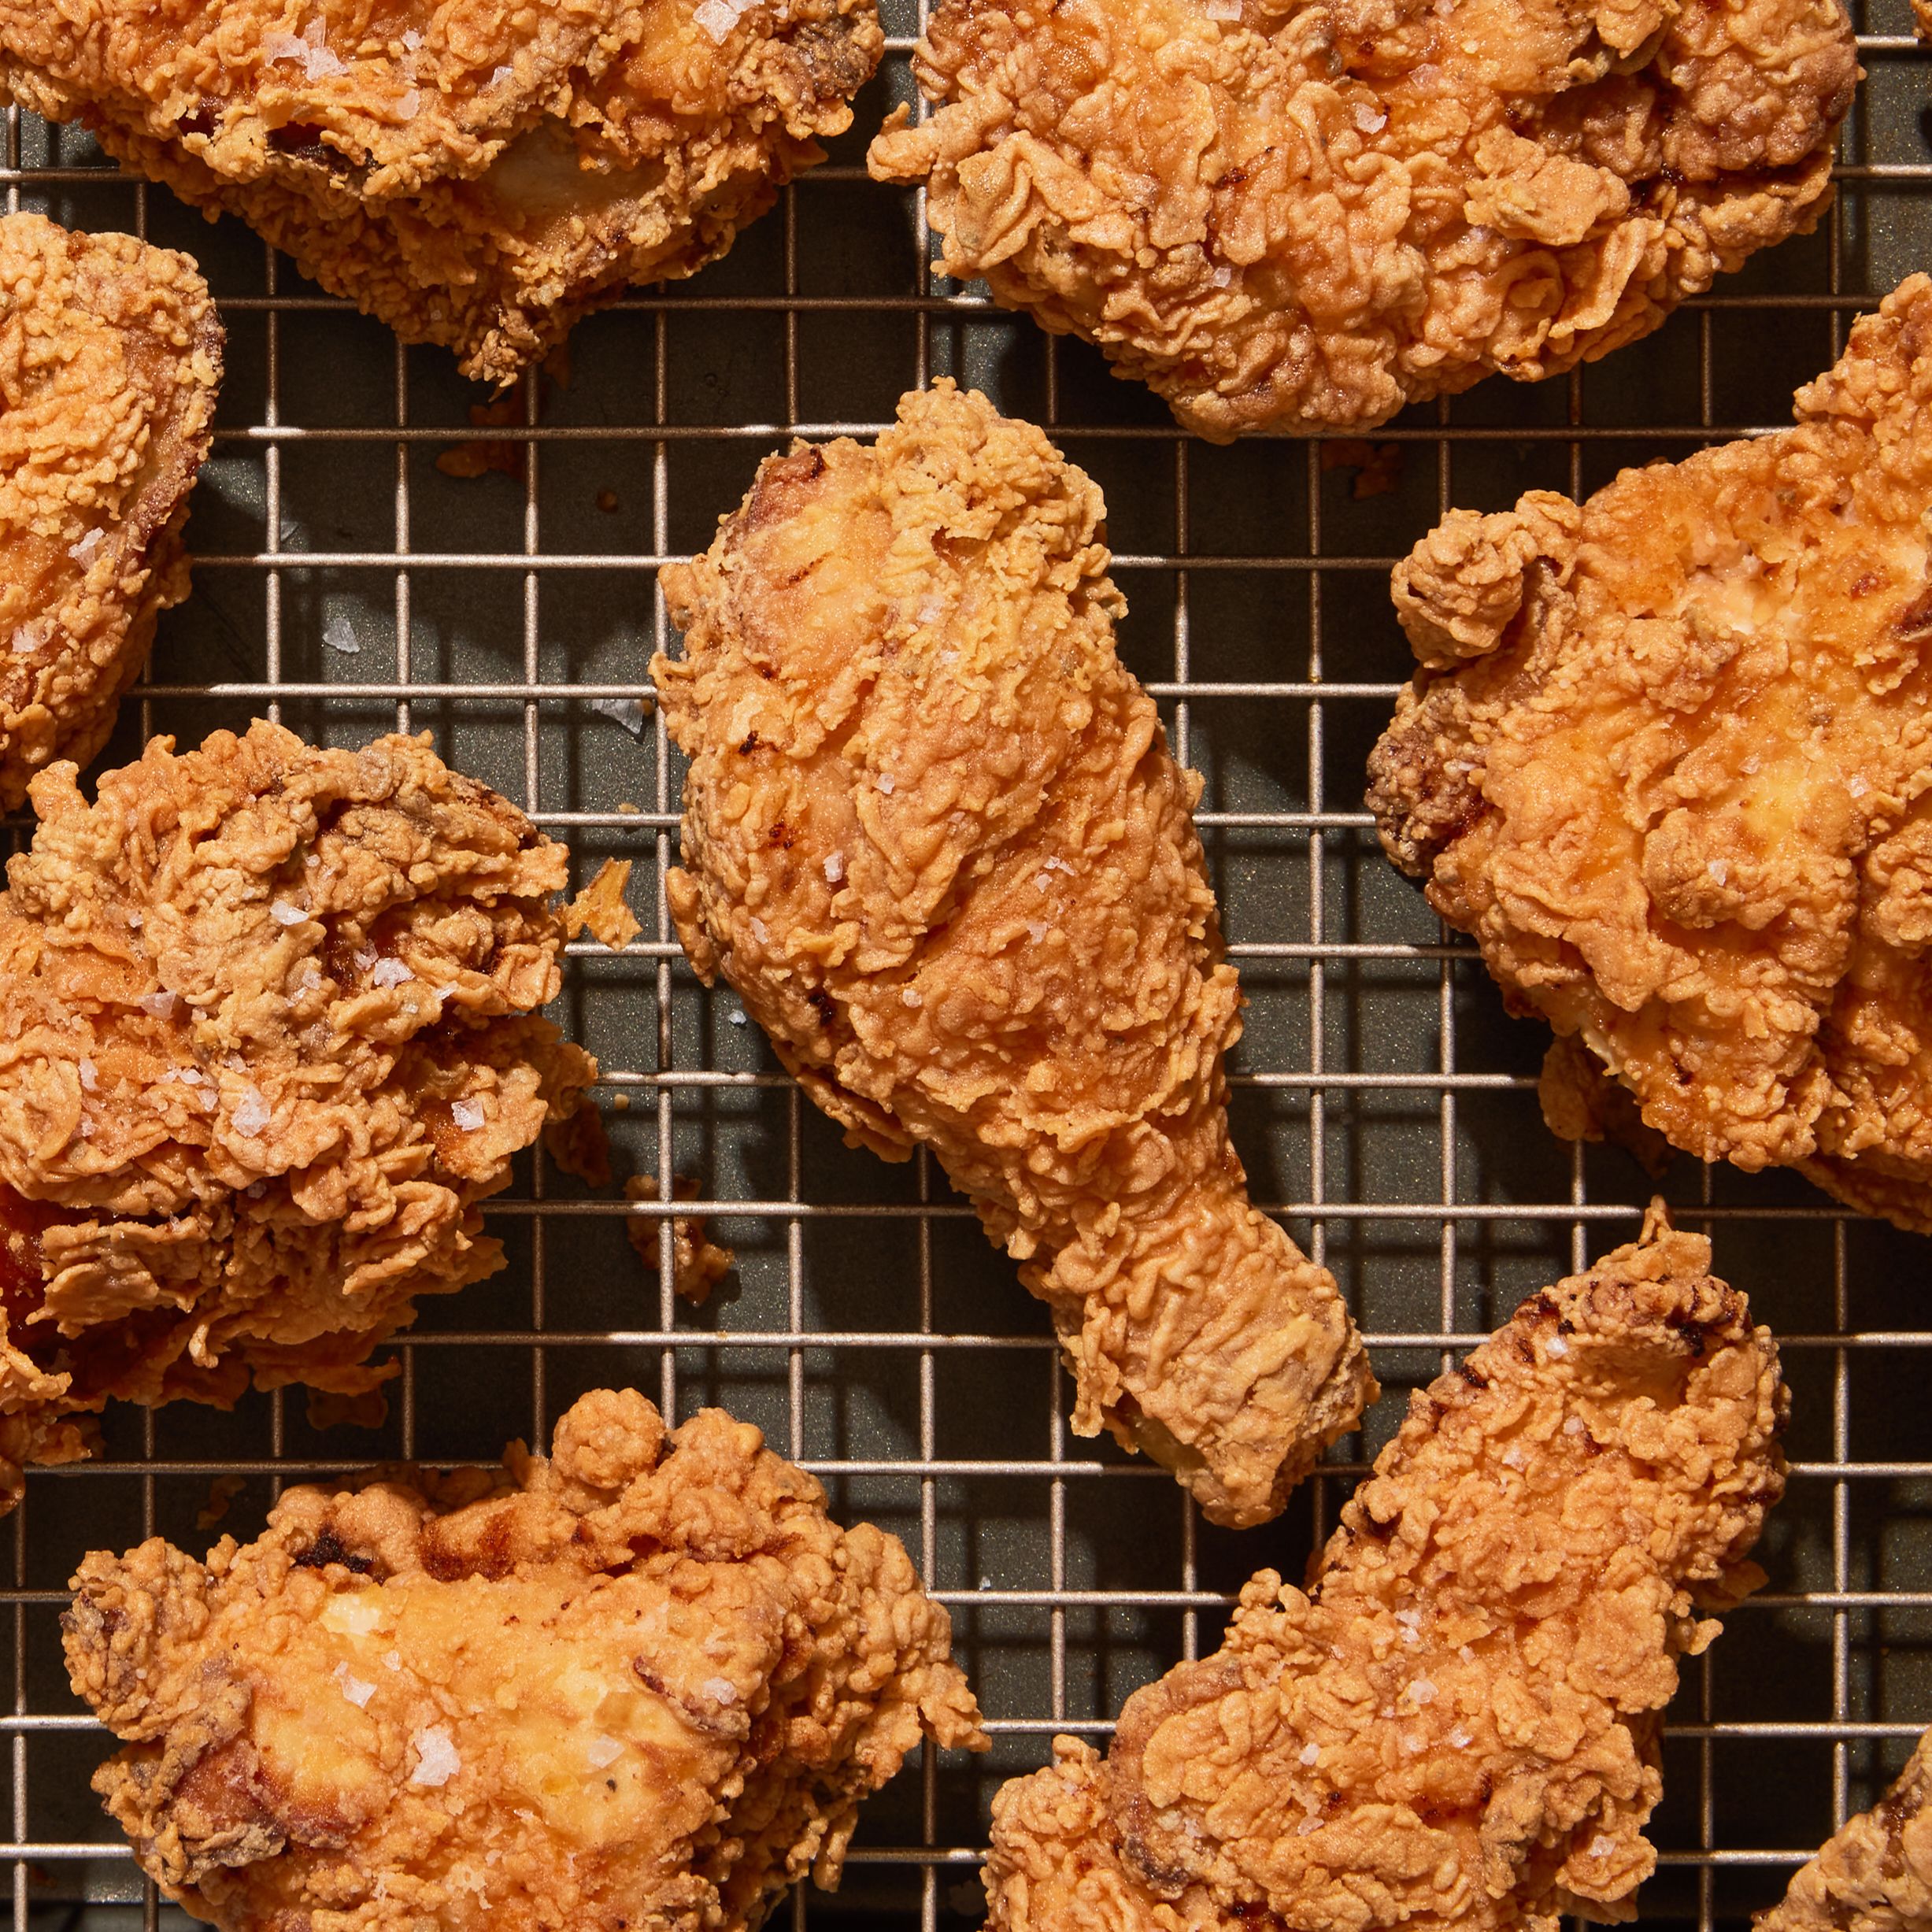 Best Crispy Fried Chicken Recipe - How To Make Fried Chicken